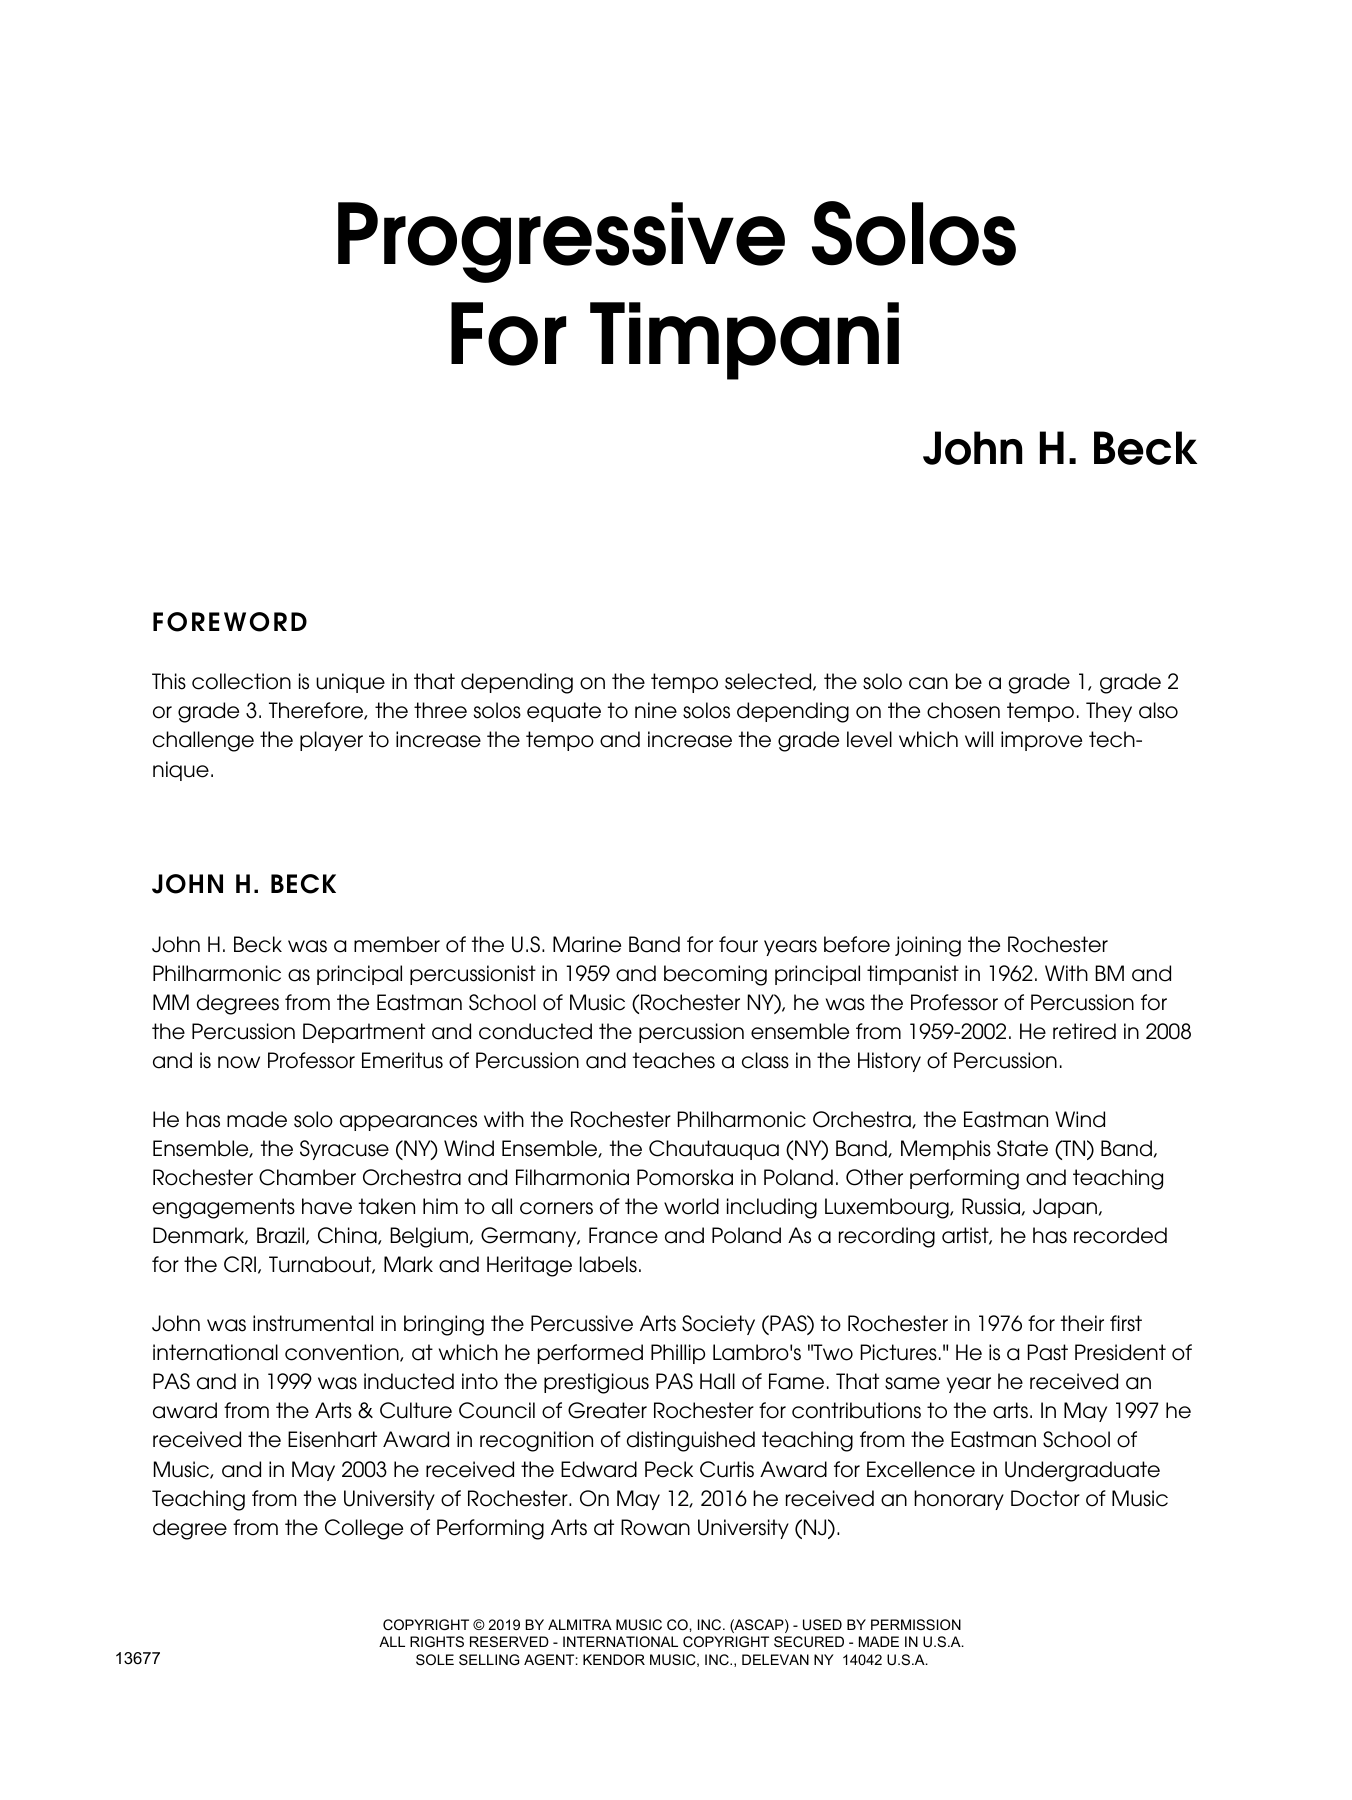 Progressive Solos For Timpani (Percussion Solo) von John H. Beck